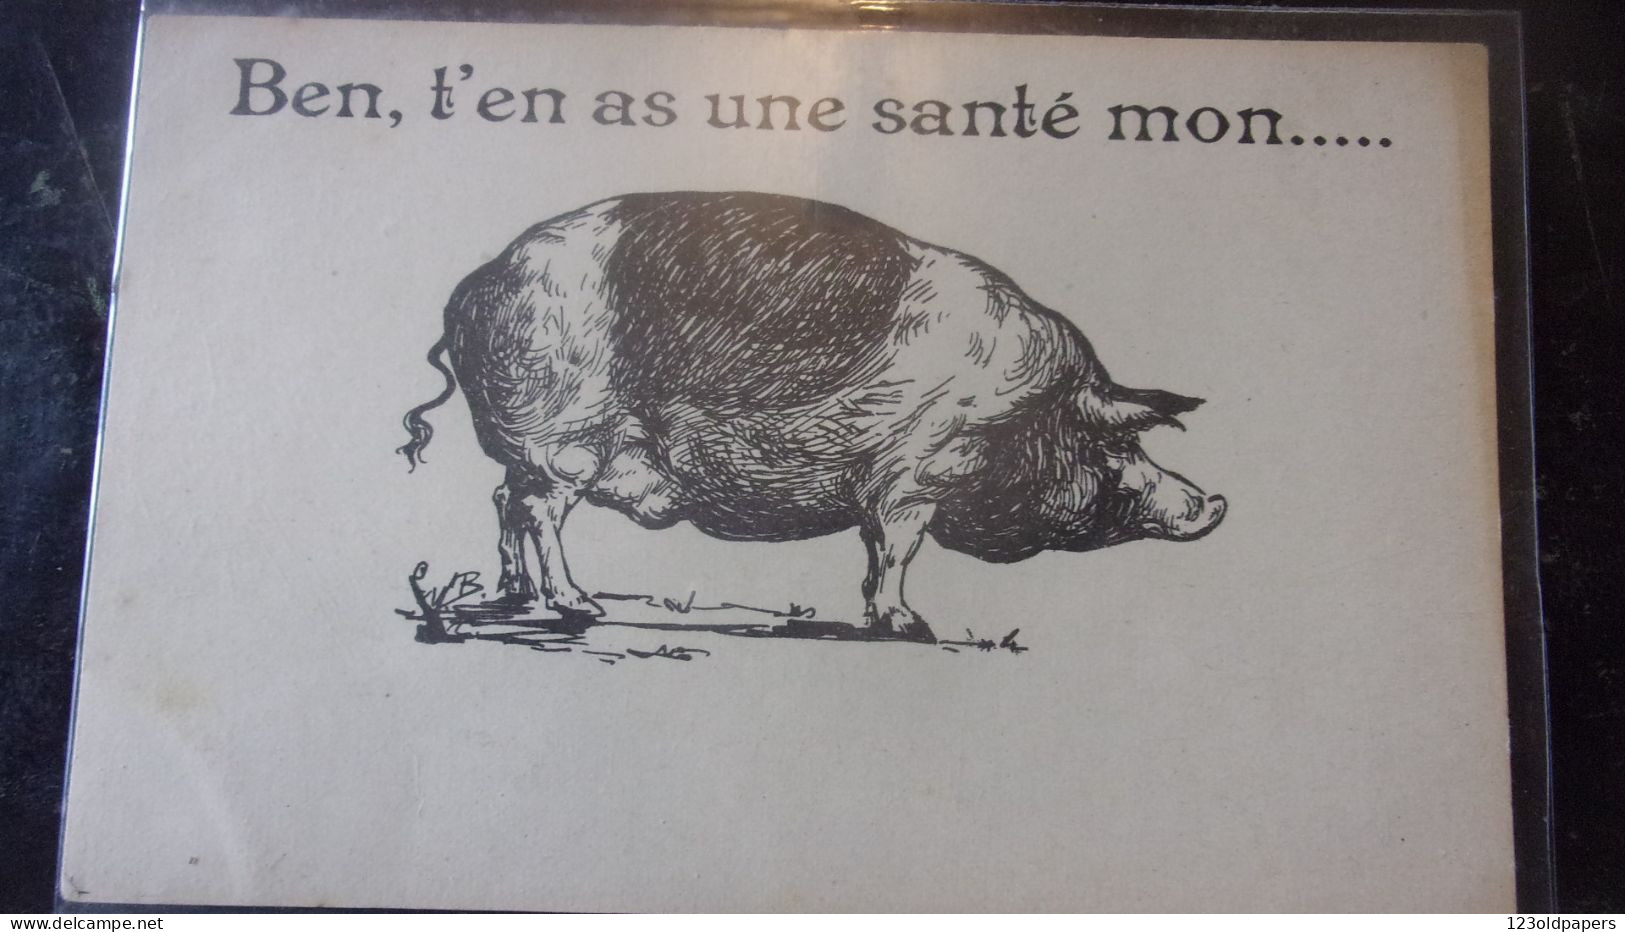 PORC PIG COCHON PORK - Cochons